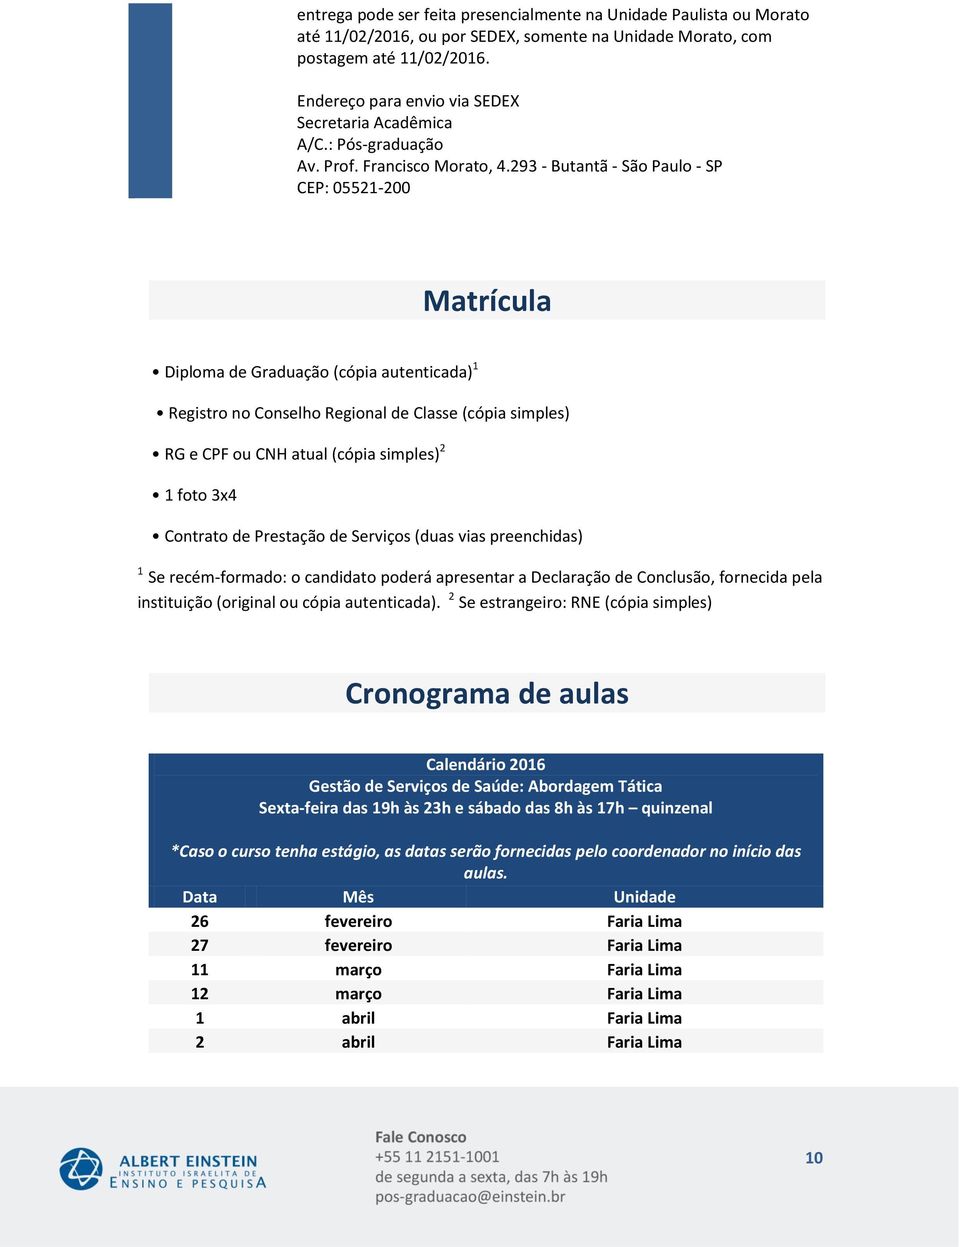 293 - Butantã - São Paulo - SP CEP: 05521- Matrícula Diploma de Graduação (cópia autenticada) Registro no Conselho Regional de Classe (cópia simples) RG e CPF ou CNH atual (cópia simples) foto x4